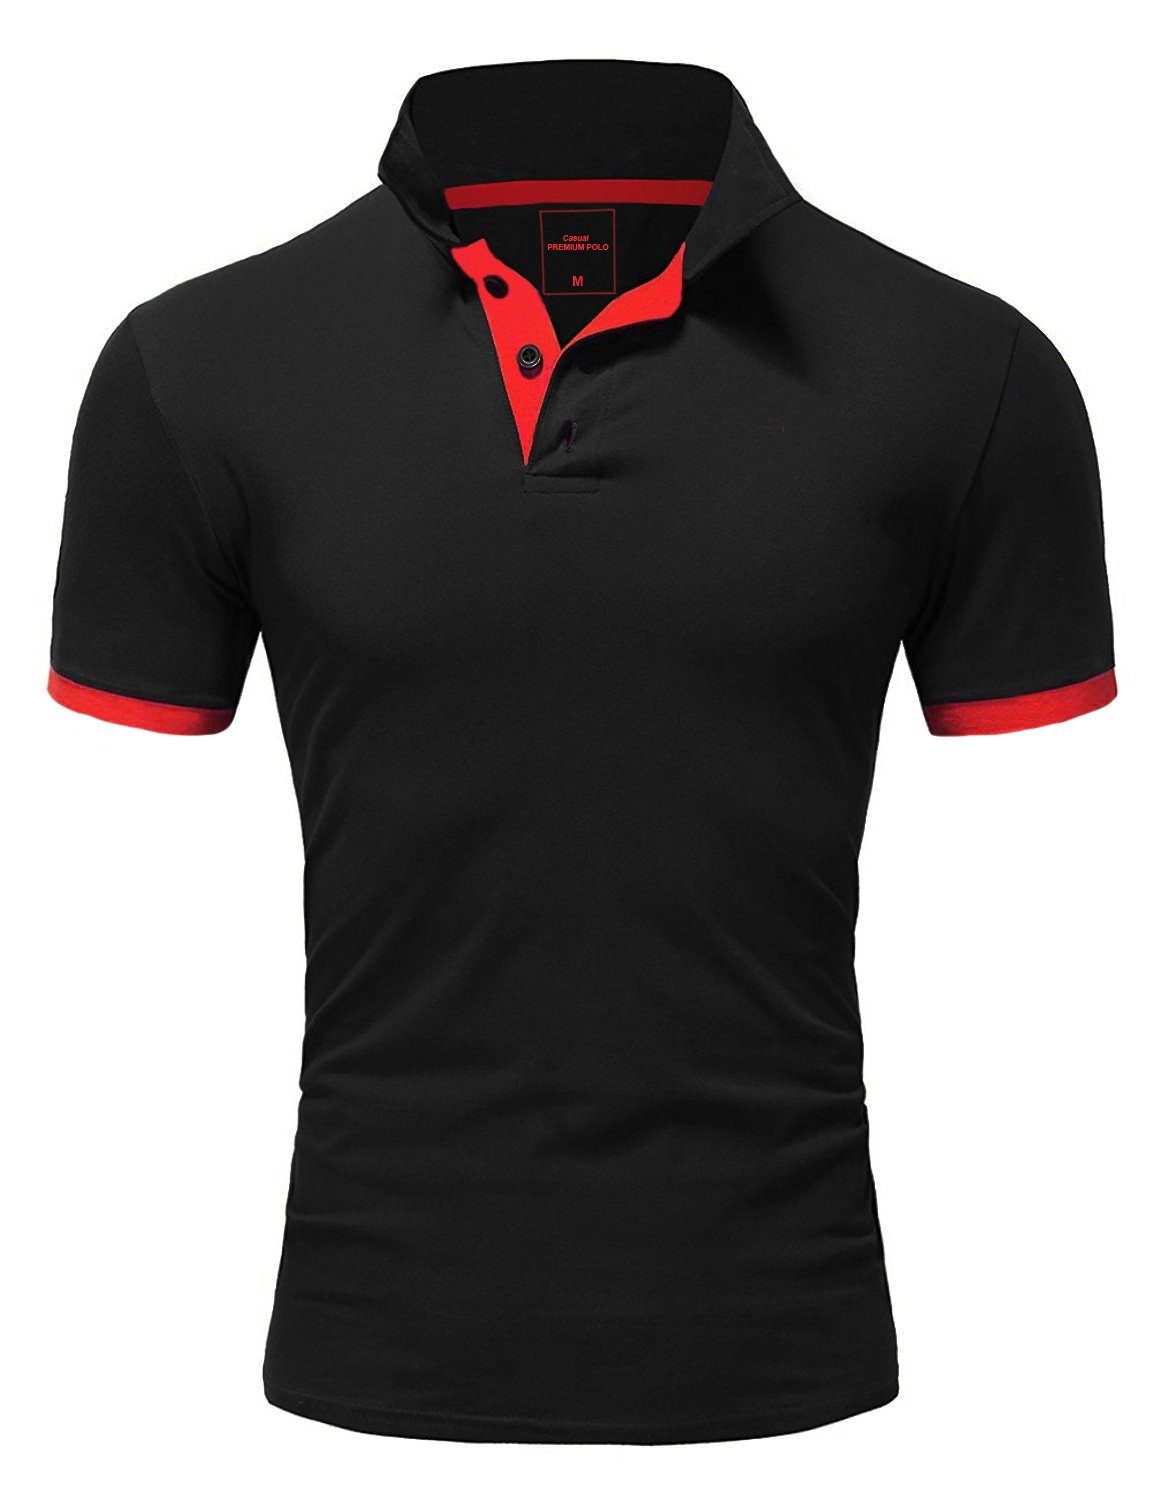 Qualität Piqué kontrastierenden Schwarz/Rot Akzenten, Shirt Herren Poloshirt mit in REPUBLIX RONALD